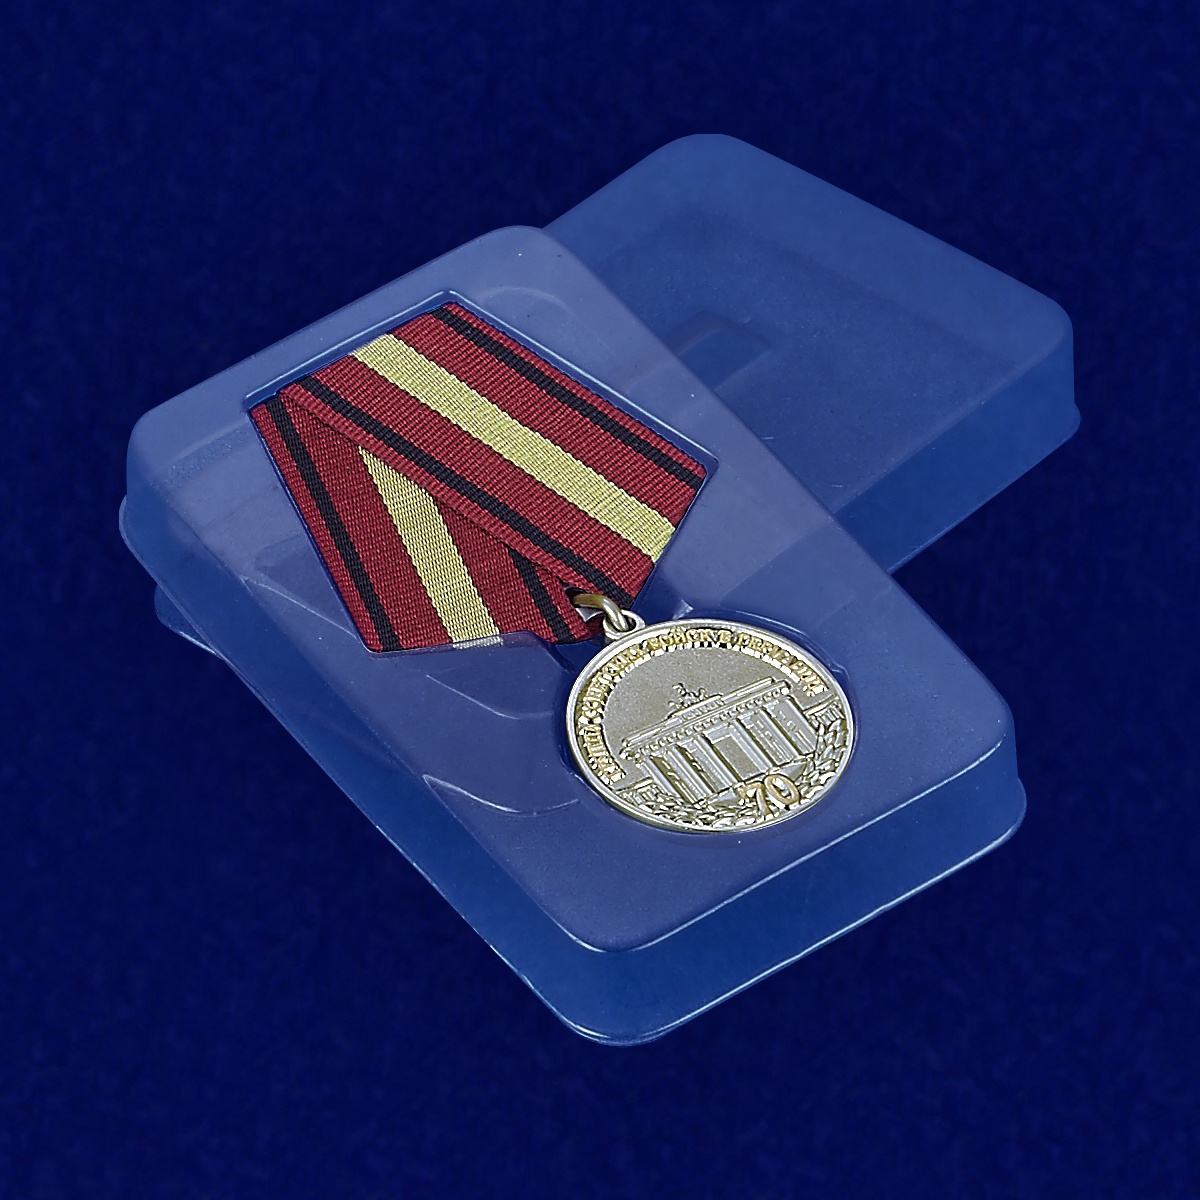 Медаль "70 лет ГСВГ" 